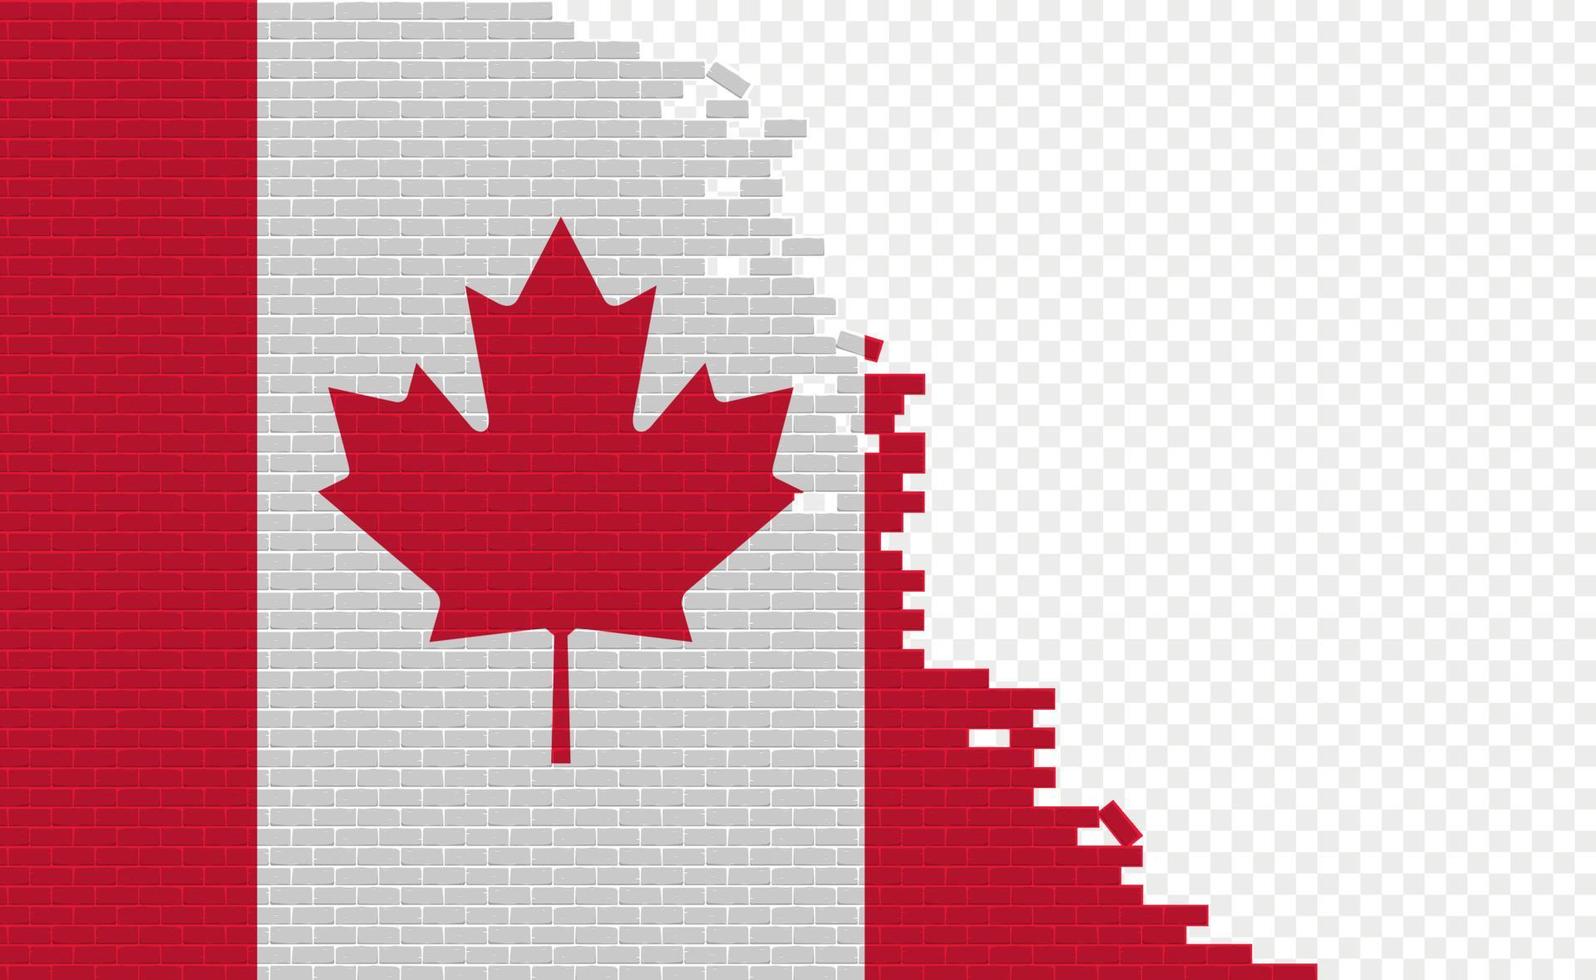 bandera de canadá en la pared de ladrillos rotos. campo de bandera vacío de otro país. comparación de países. fácil edición y vector en grupos.